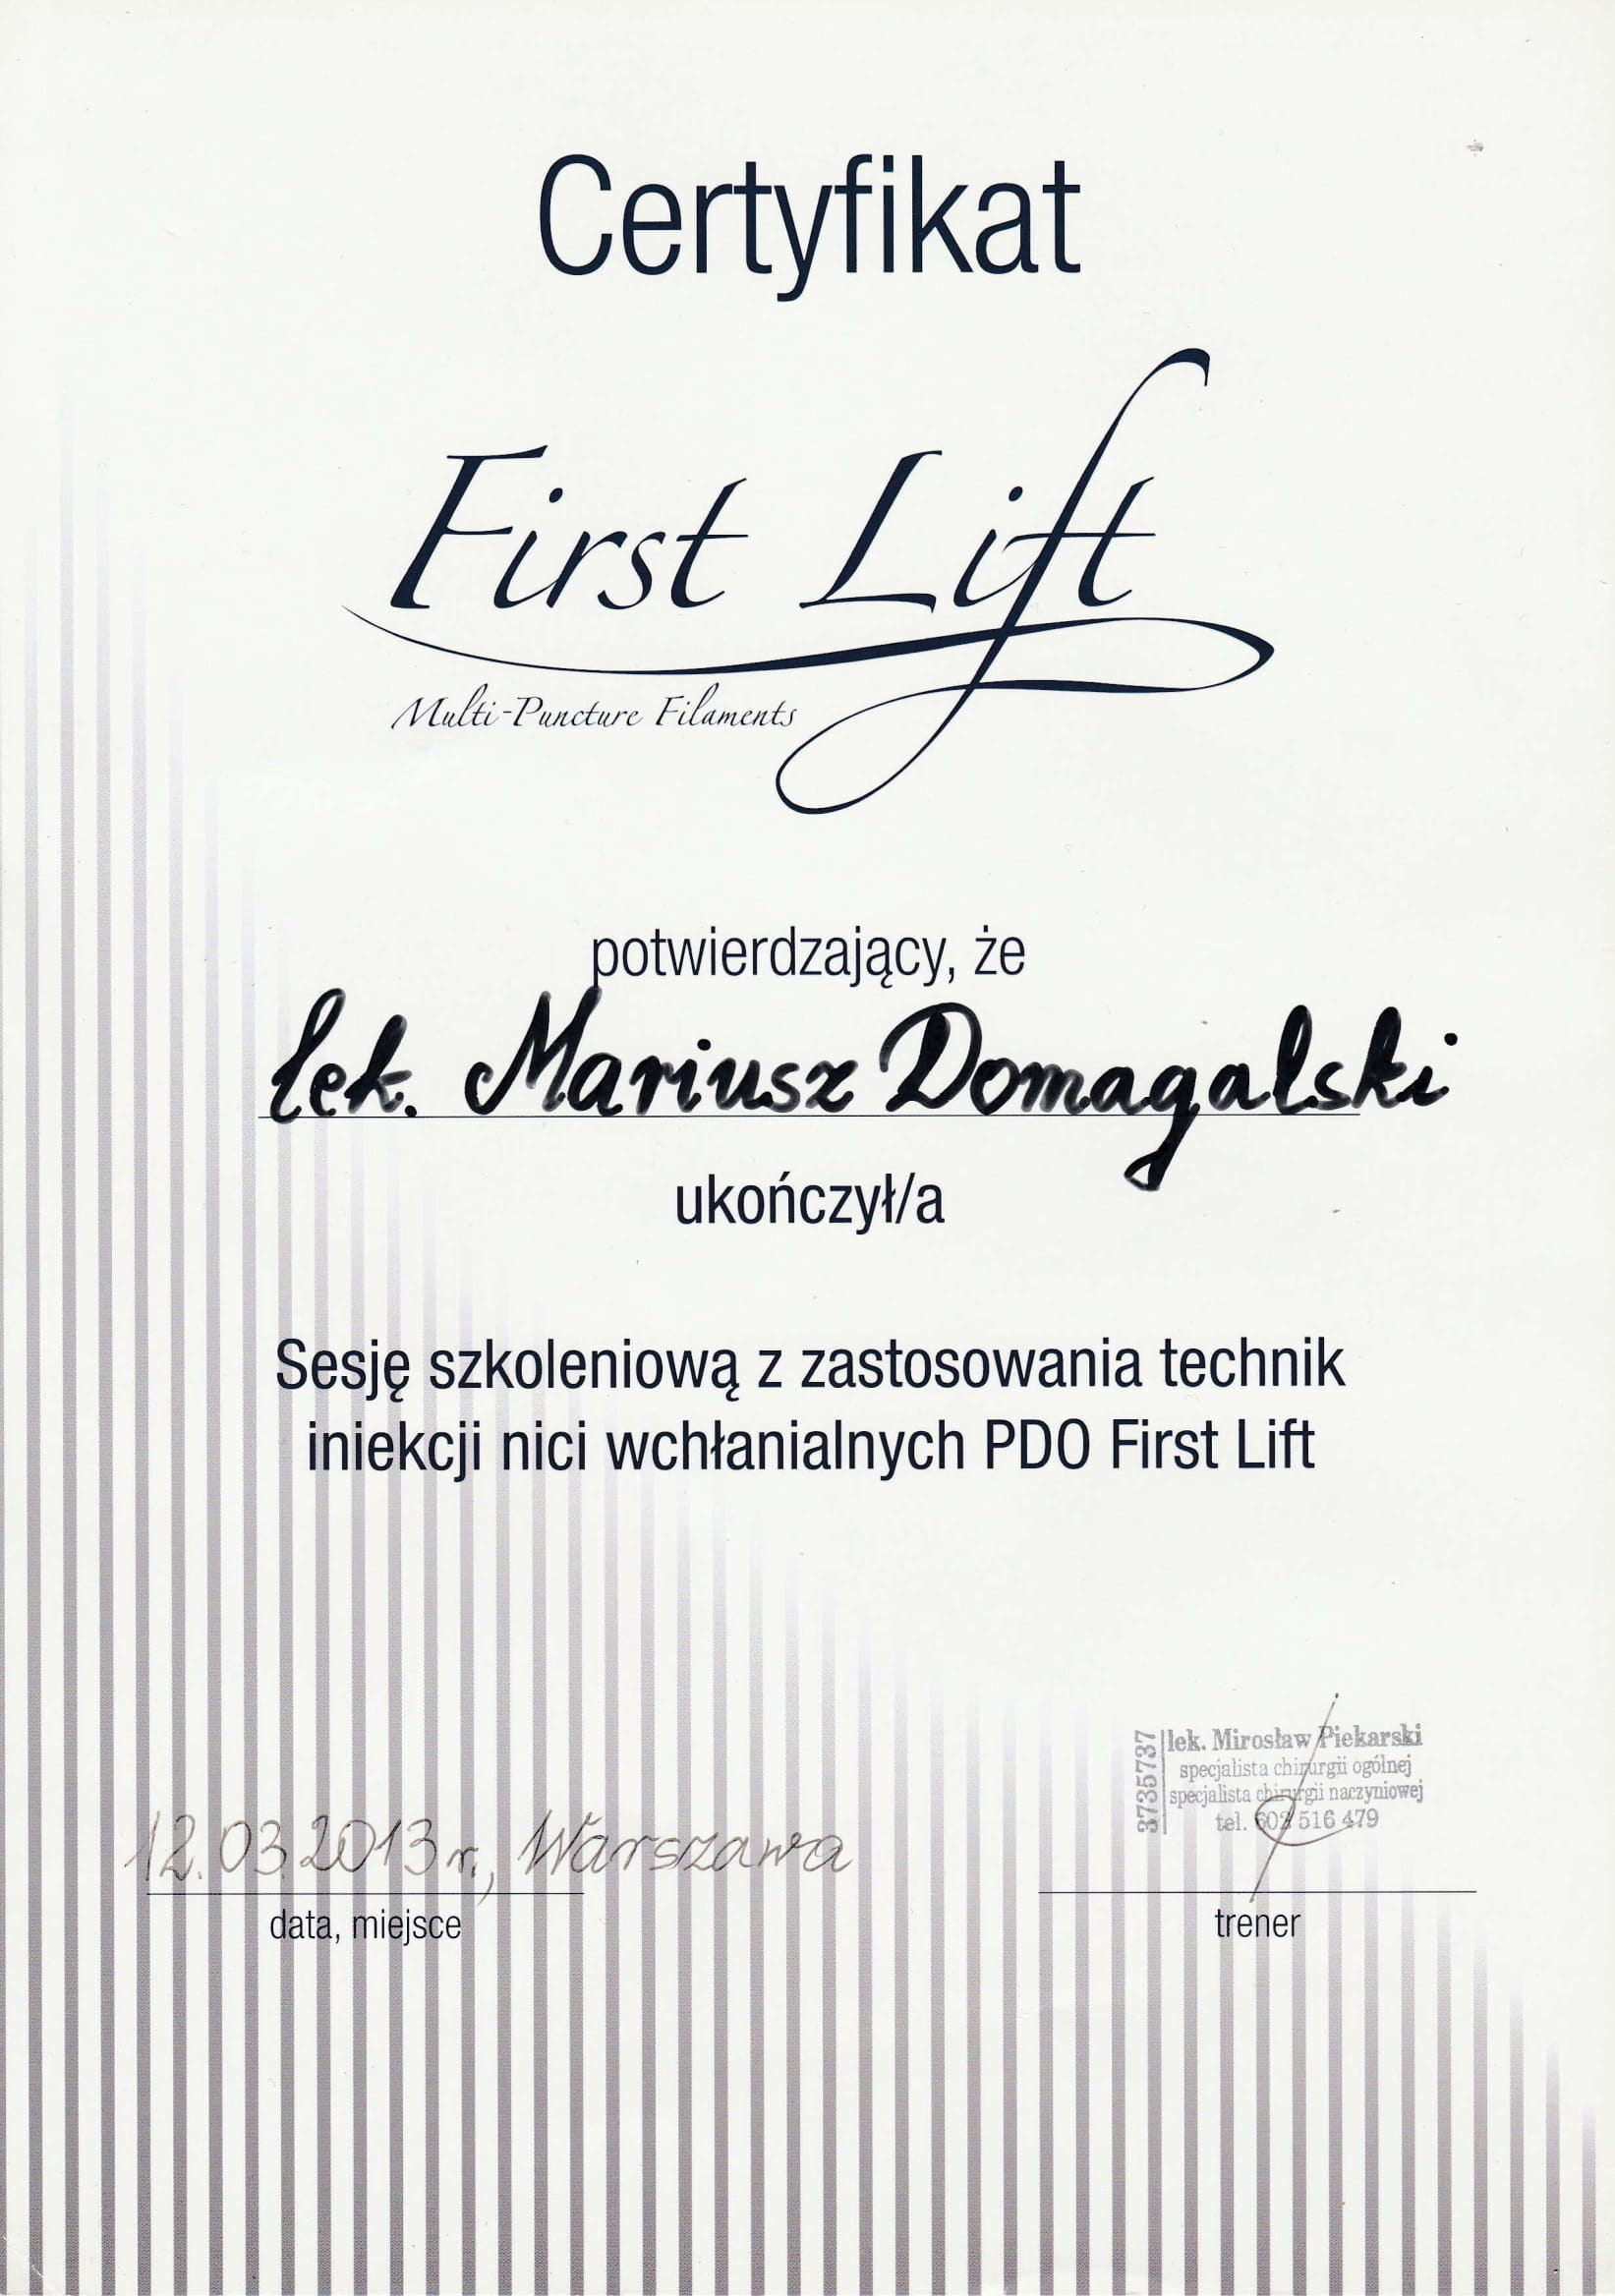 Certyfikat ukończenia szkolenia z zastosowania technik iniekcji nici liftingujących PDO First Lift (2013)